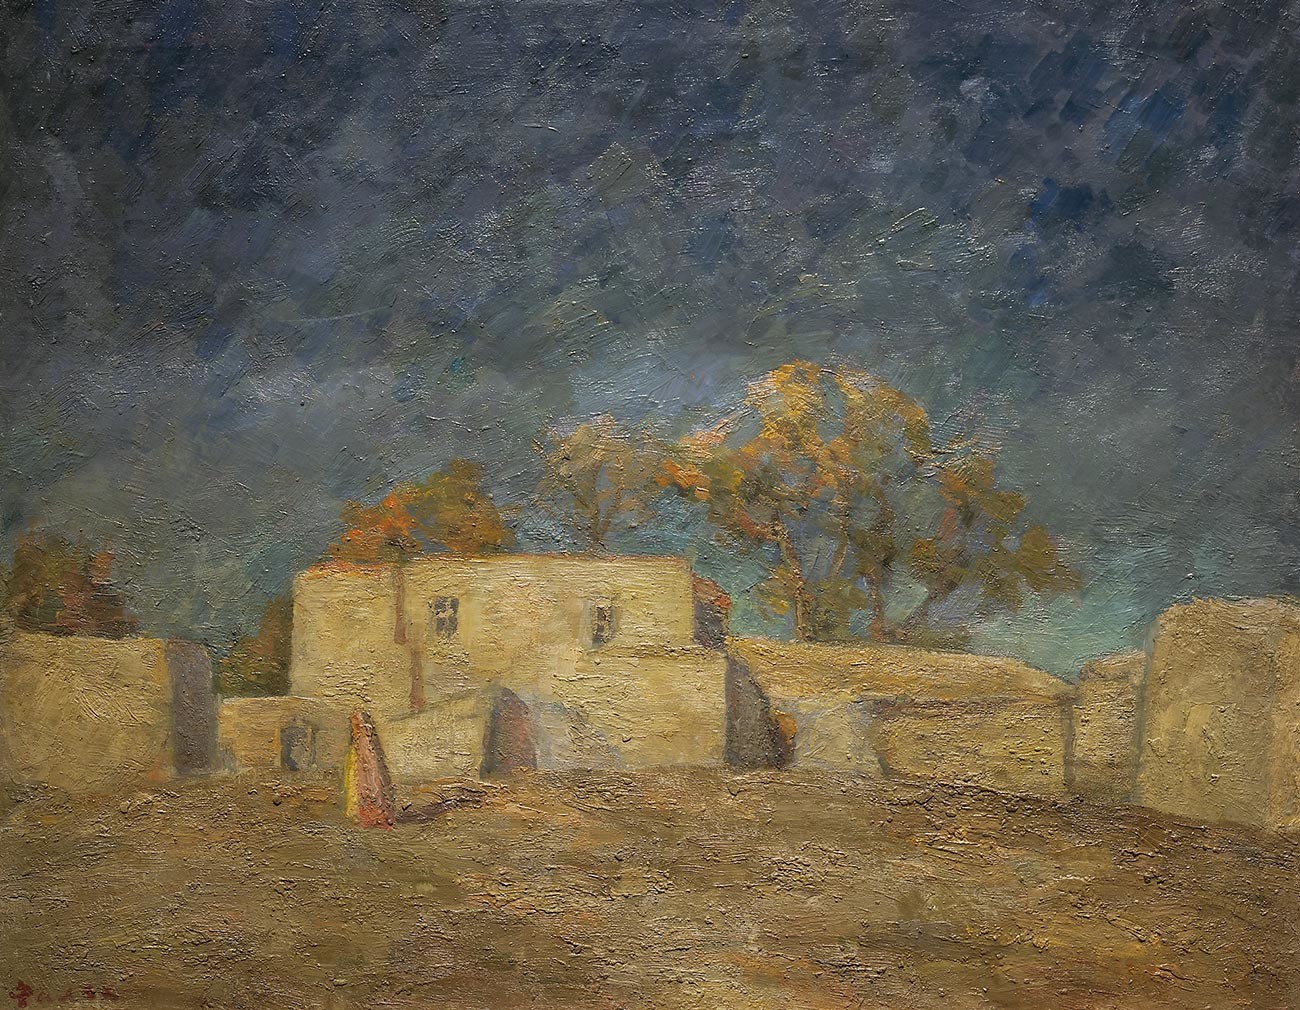 黄金の荒れ地、サマルカンド、1943年